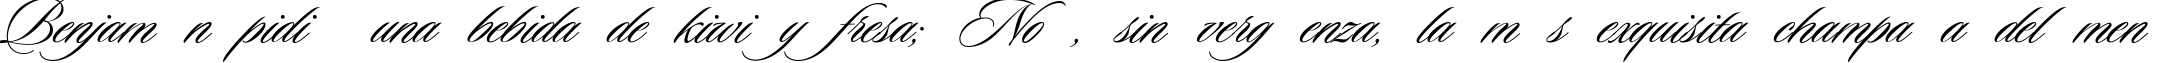 Пример написания шрифтом Ceremonious One текста на испанском